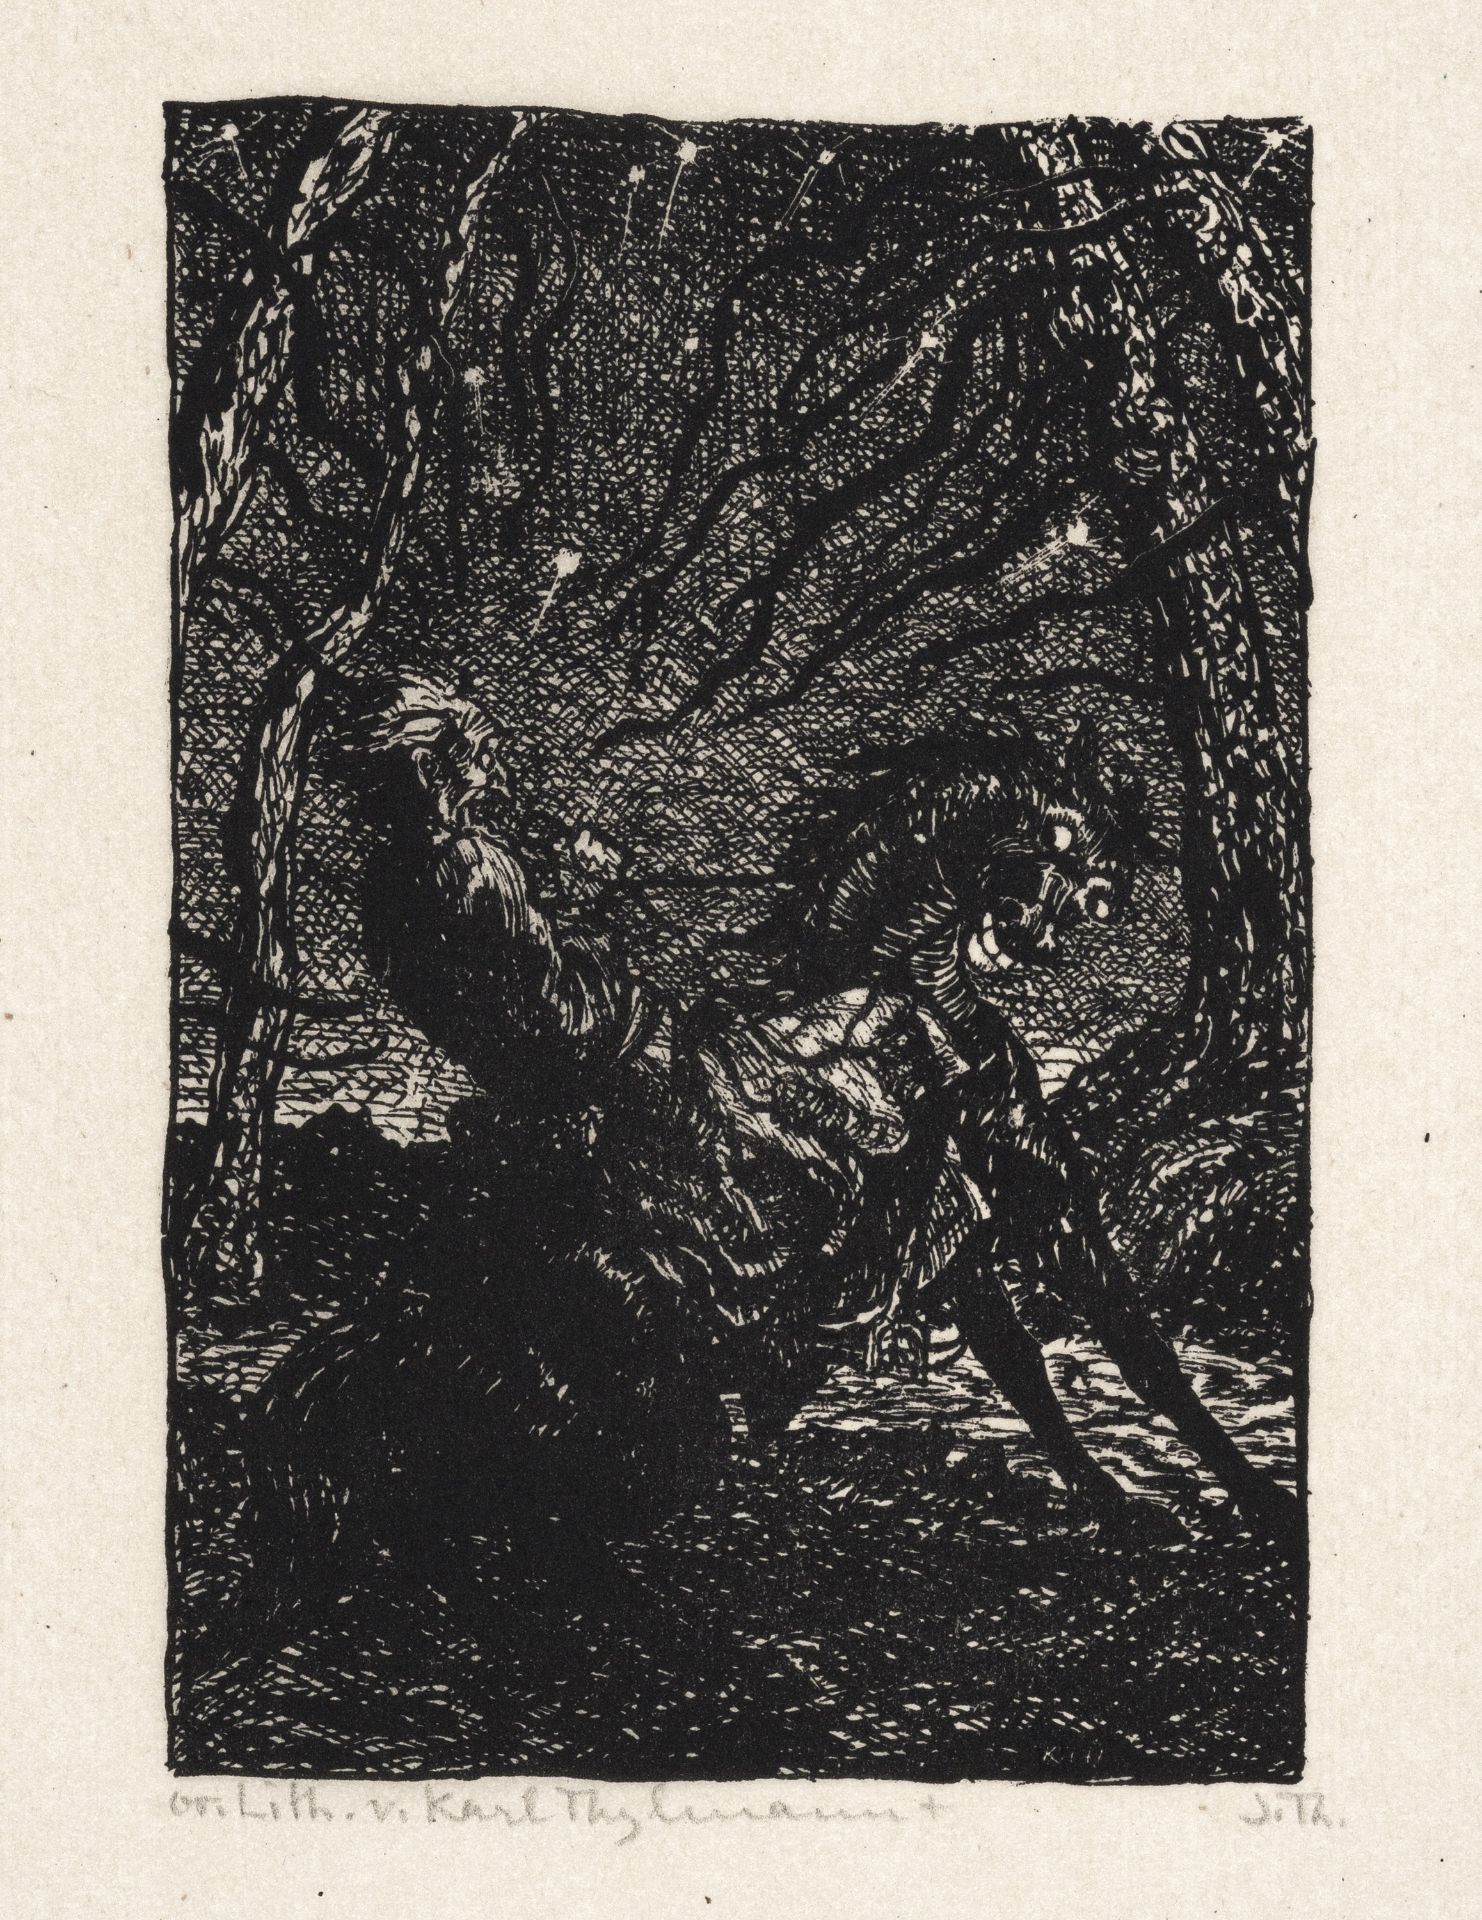 Karl Thylmann "Der Zauberer" von N. Gogol. 1916. - Image 12 of 12